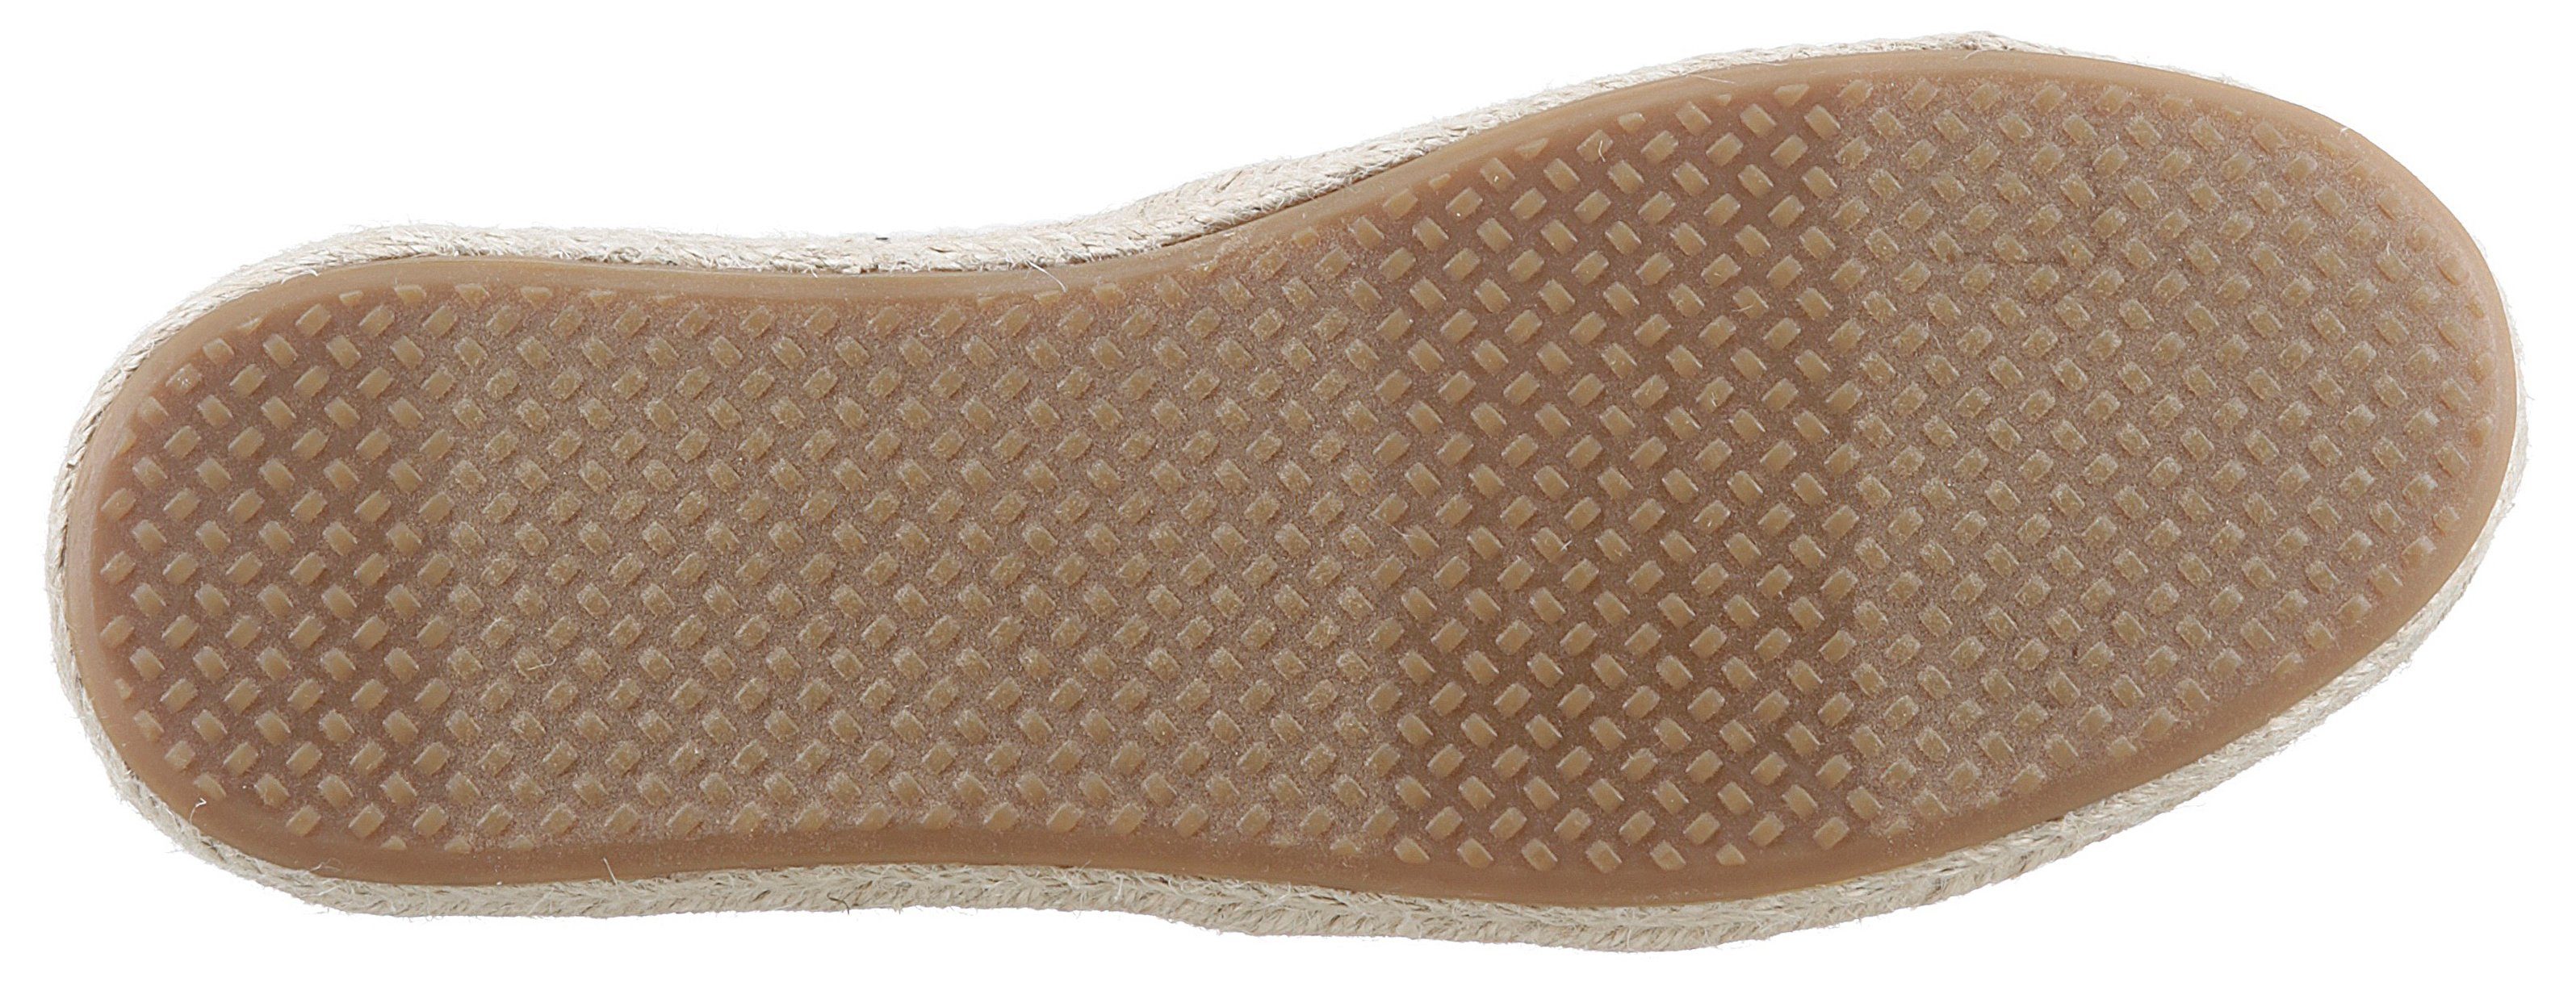 Form schmale TOMS im modischen beige-schwarz ROPE ALPARGATA Kontrastlook, Espadrille